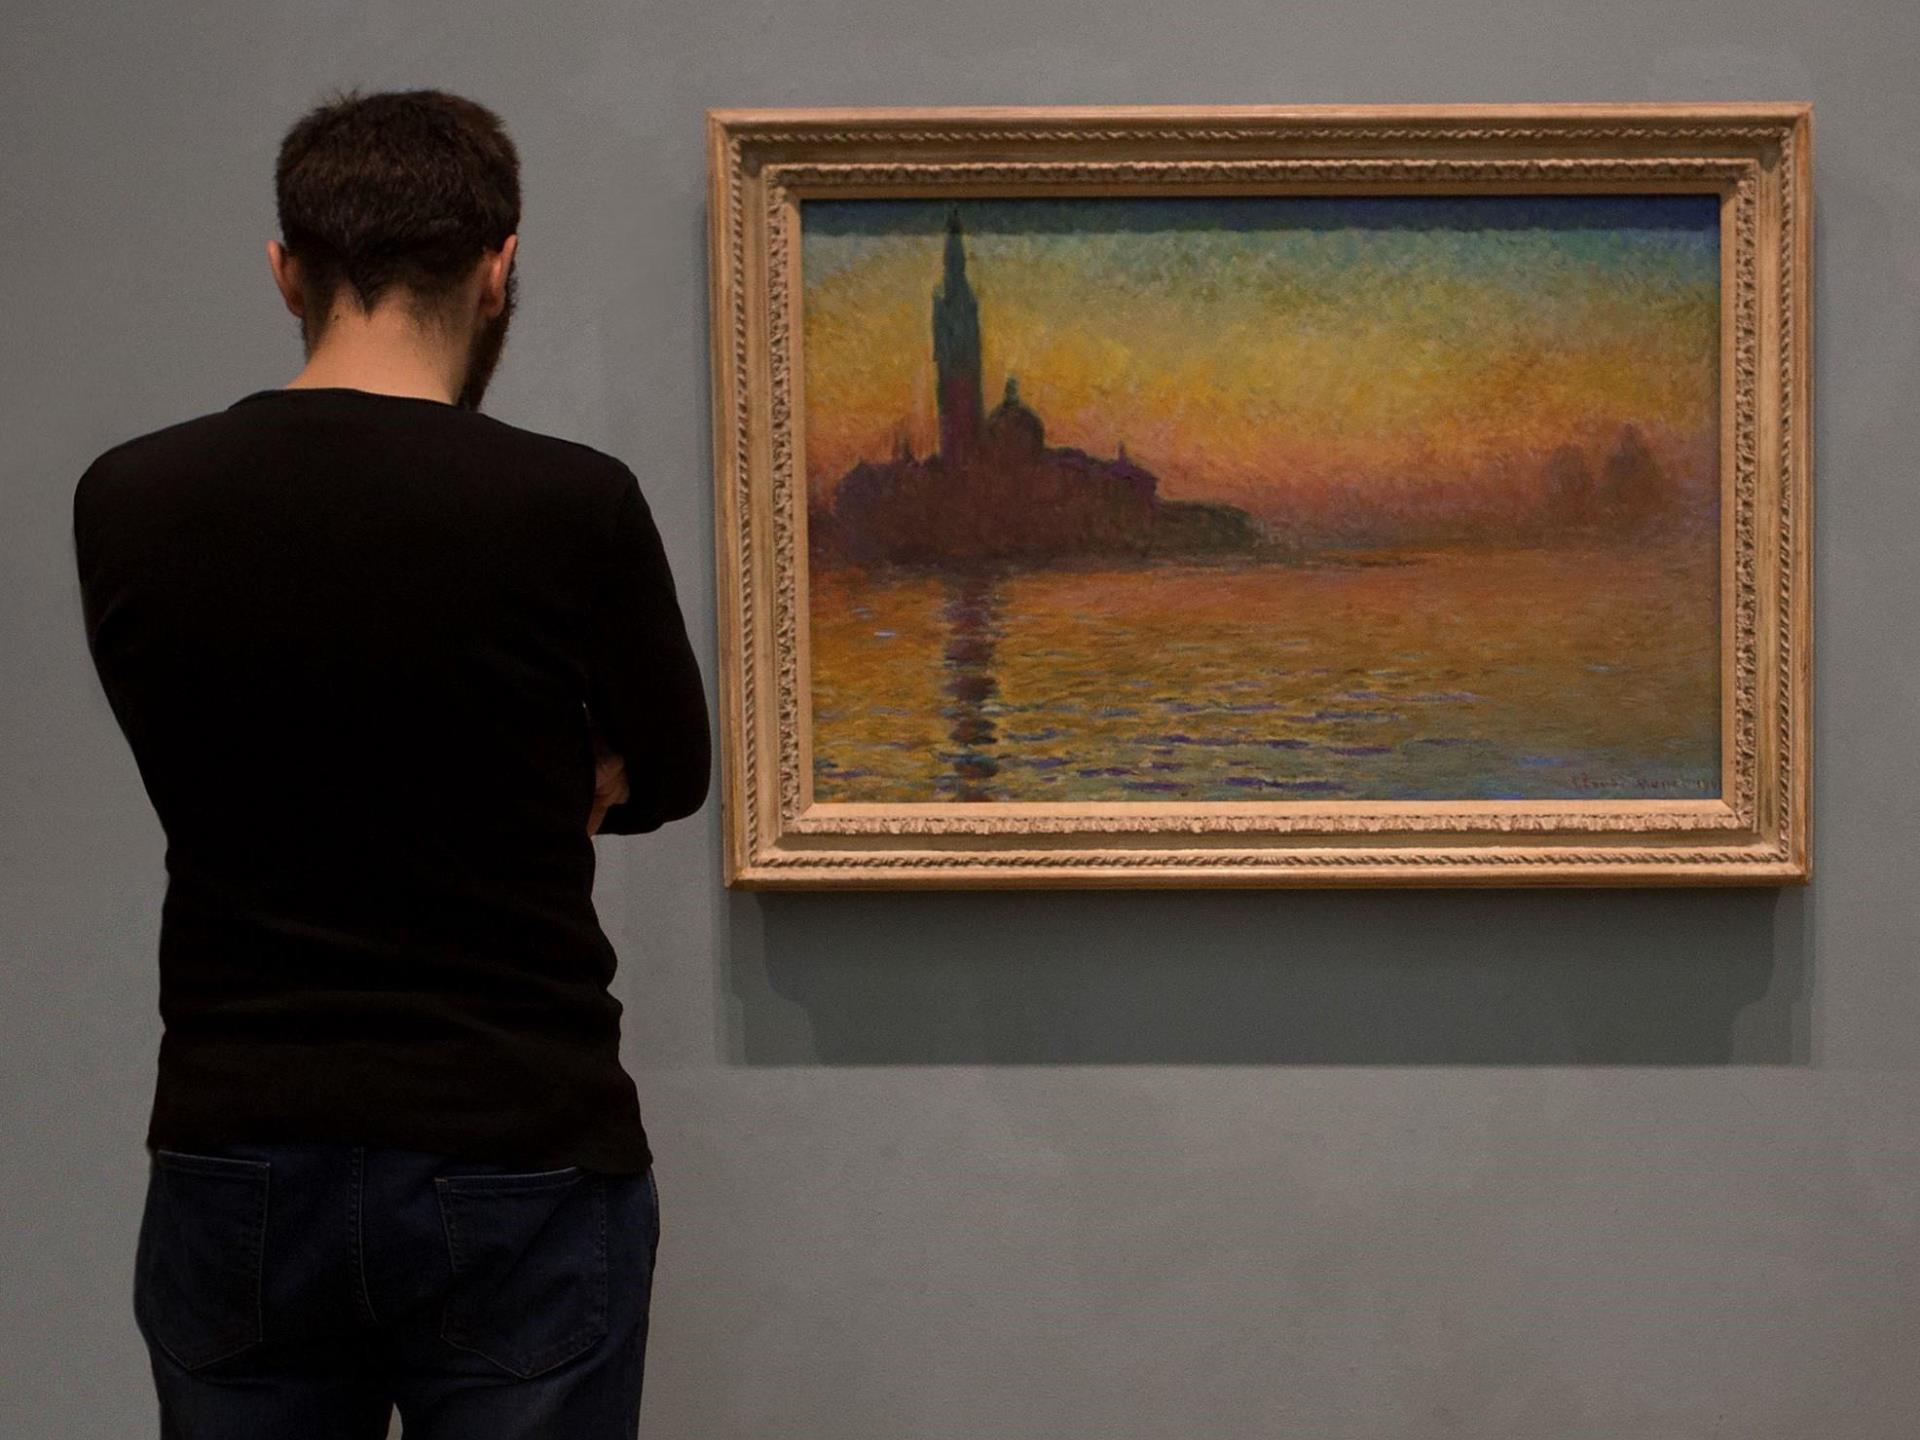 San Giorgio Maggiore, Twilight, by Monet